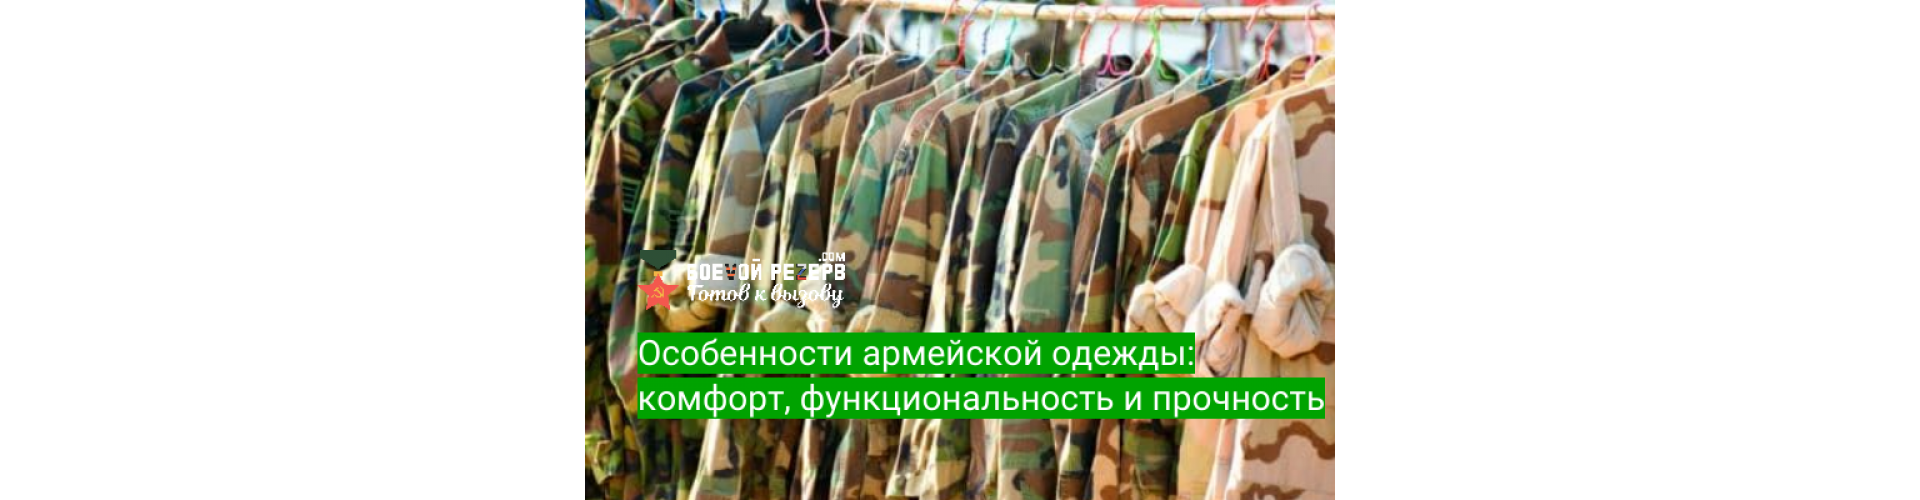 Особенности армейской одежды: комфорт, функциональность и прочность